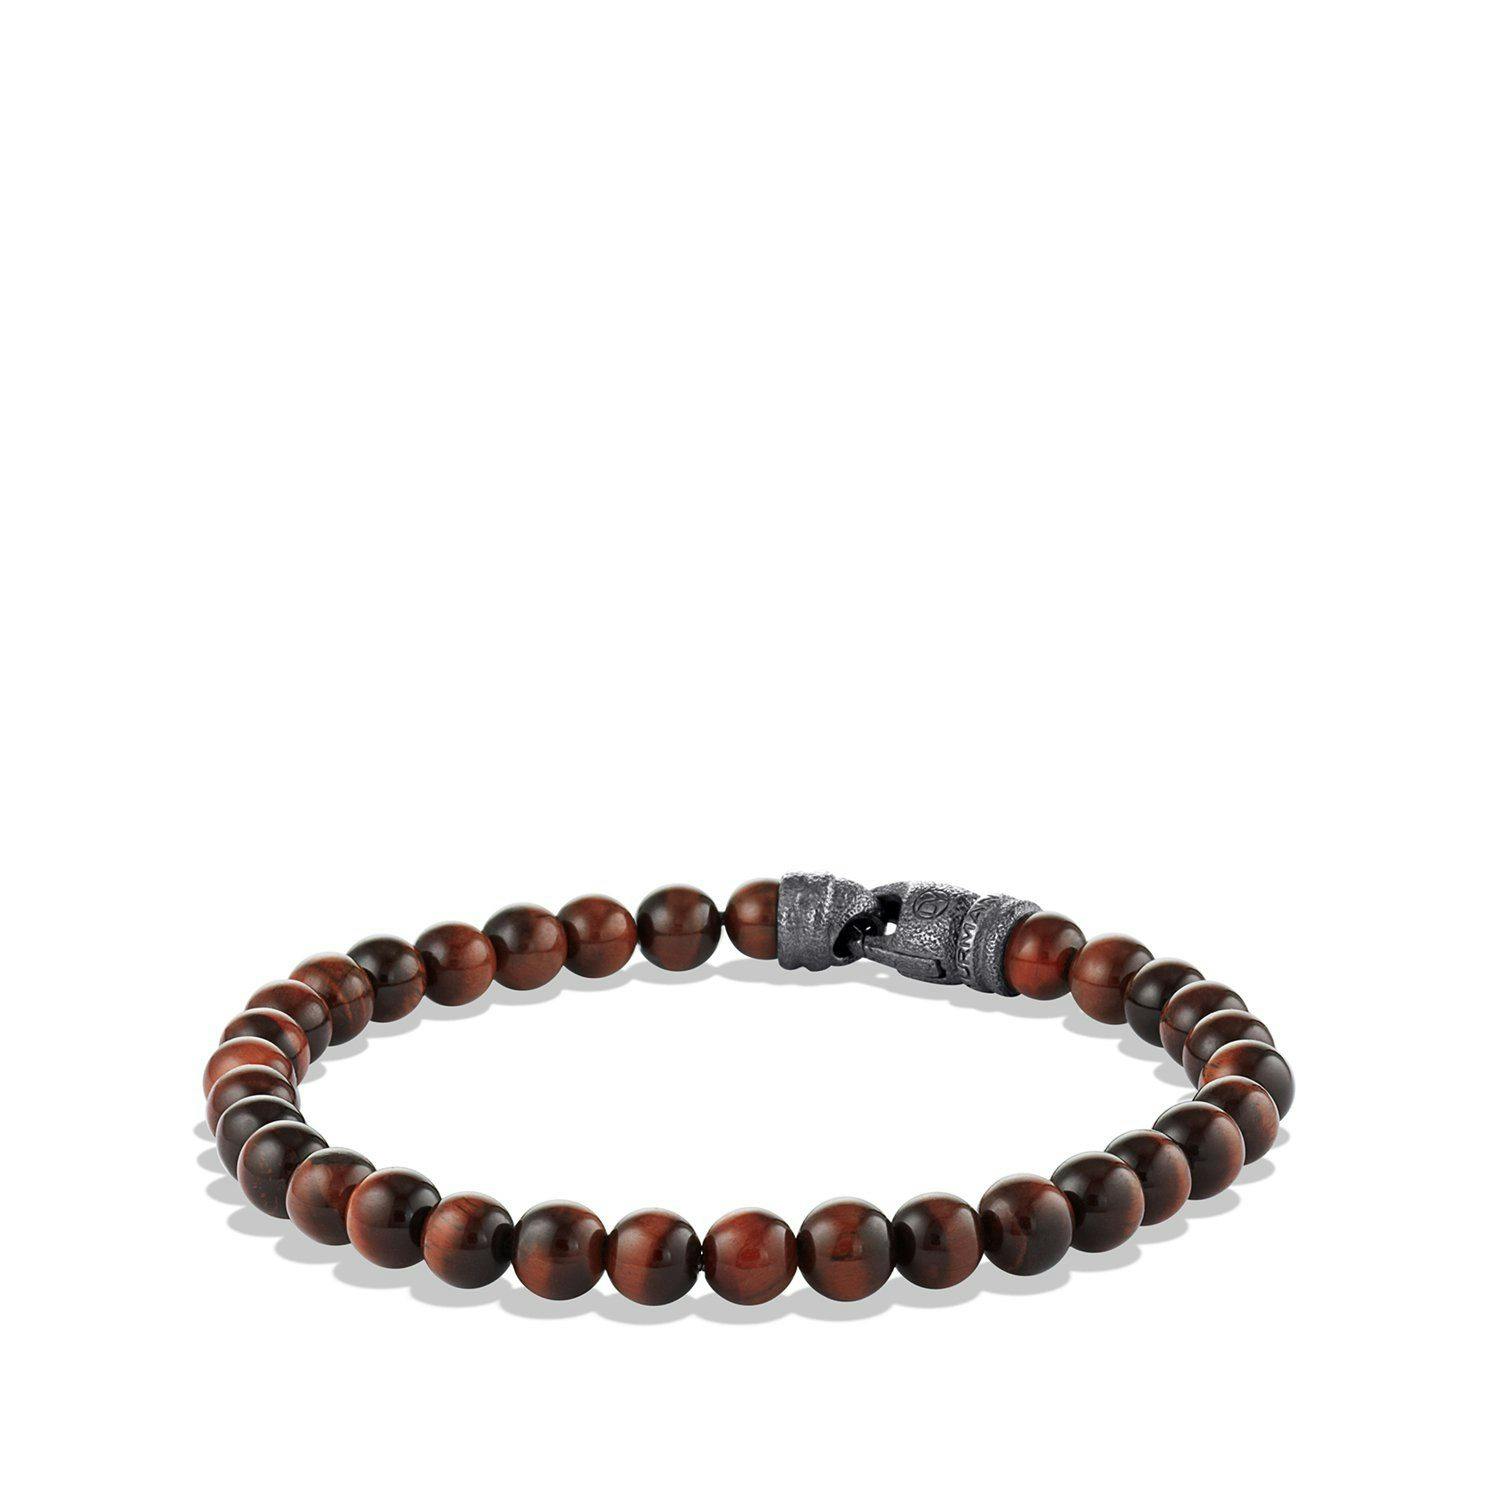 David Yurman Men's 6mm Spiritual Beads Bracelet with Red Tiger's Eye